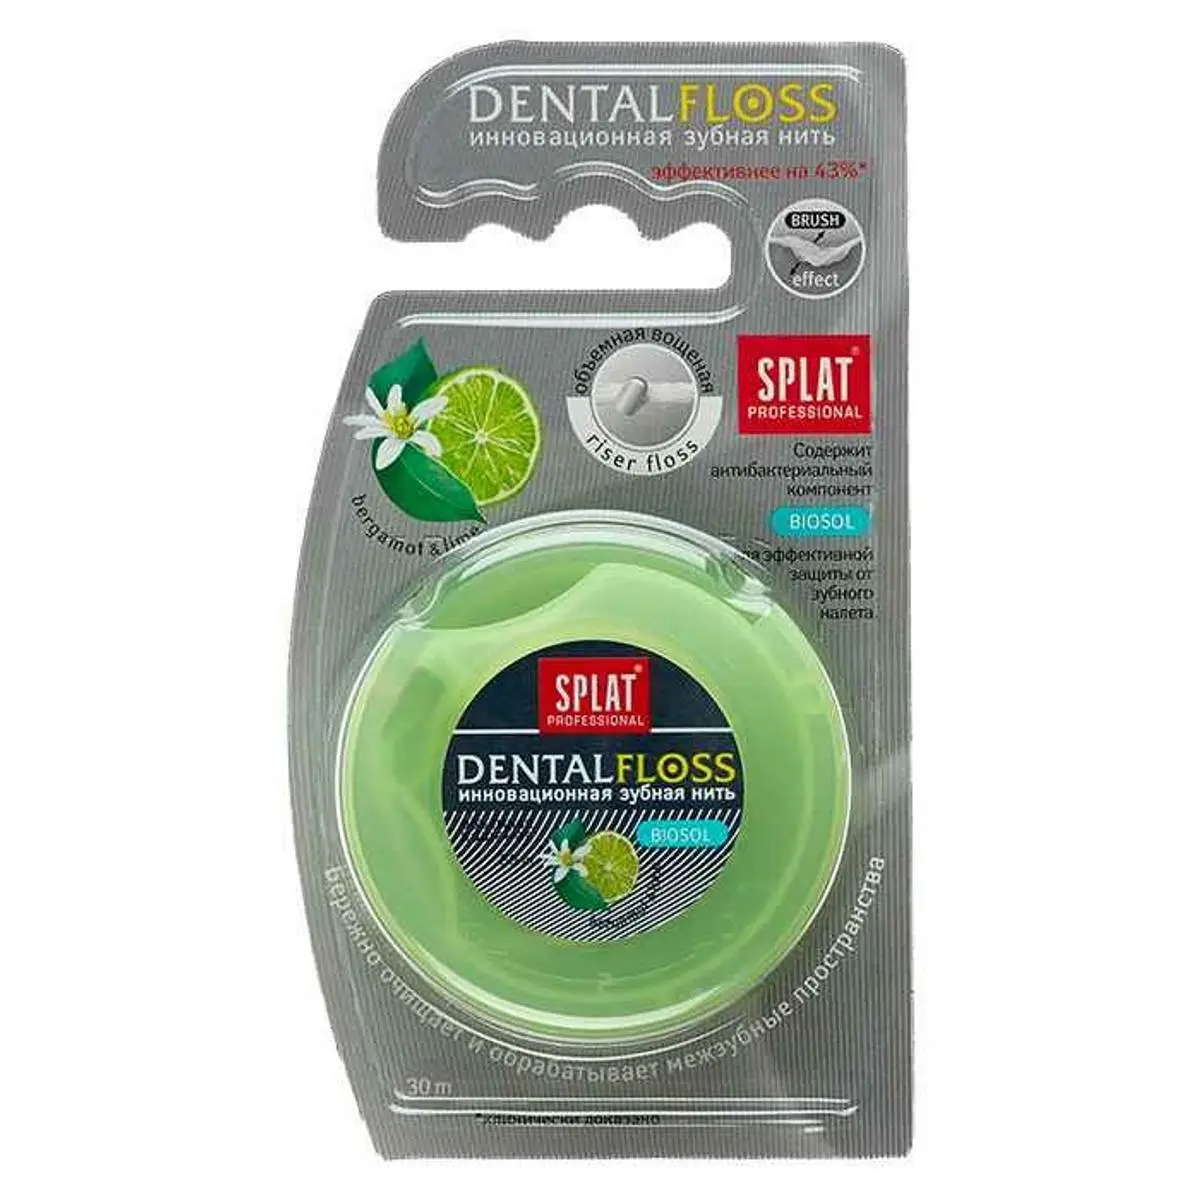 СПЛАТ Dentalfloss зубная нить объемная 30м Бергамот/лайм (Сплат Глобал, РФ)